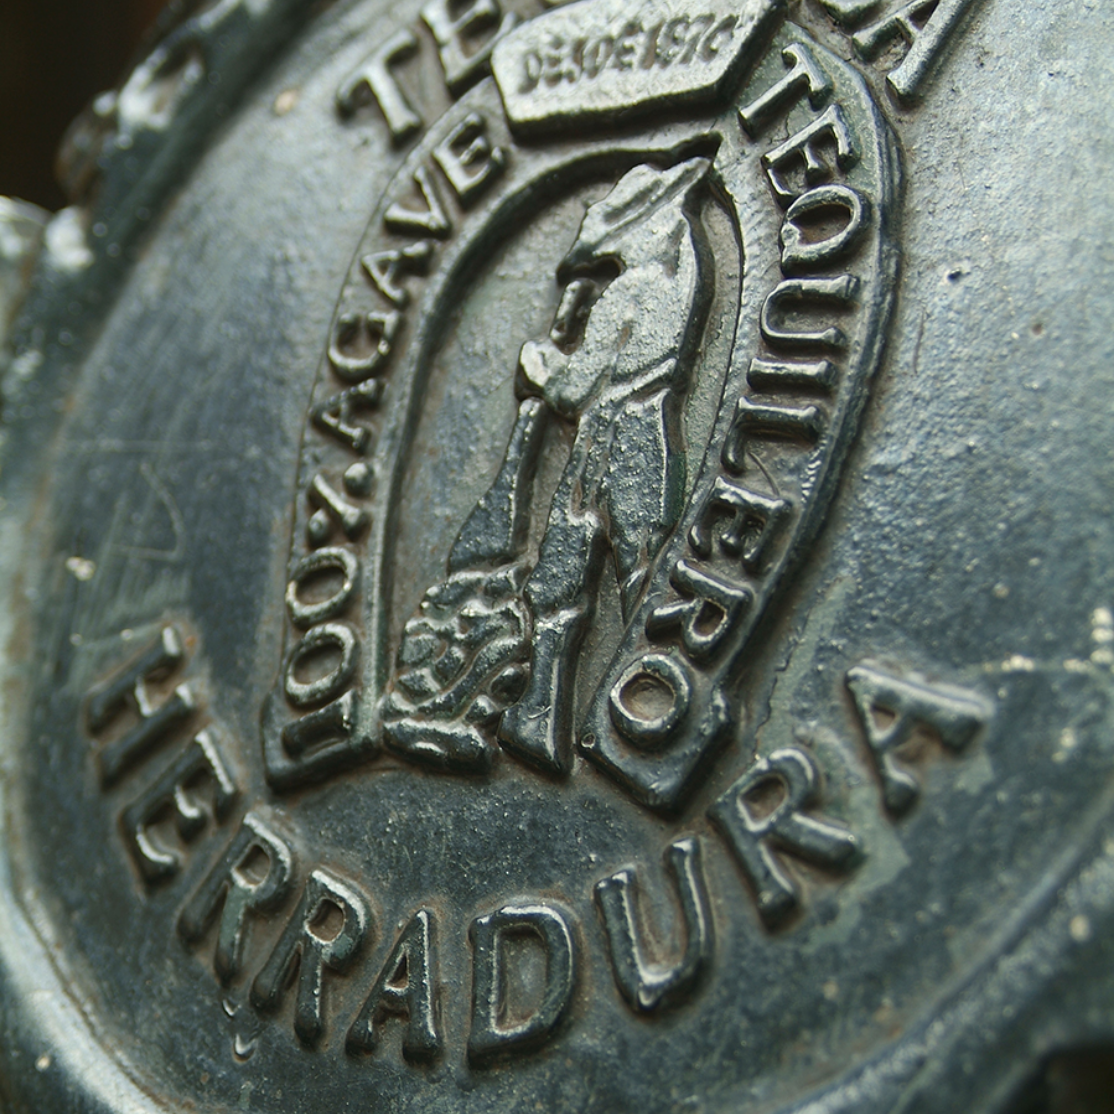 The Herradura iron brand.